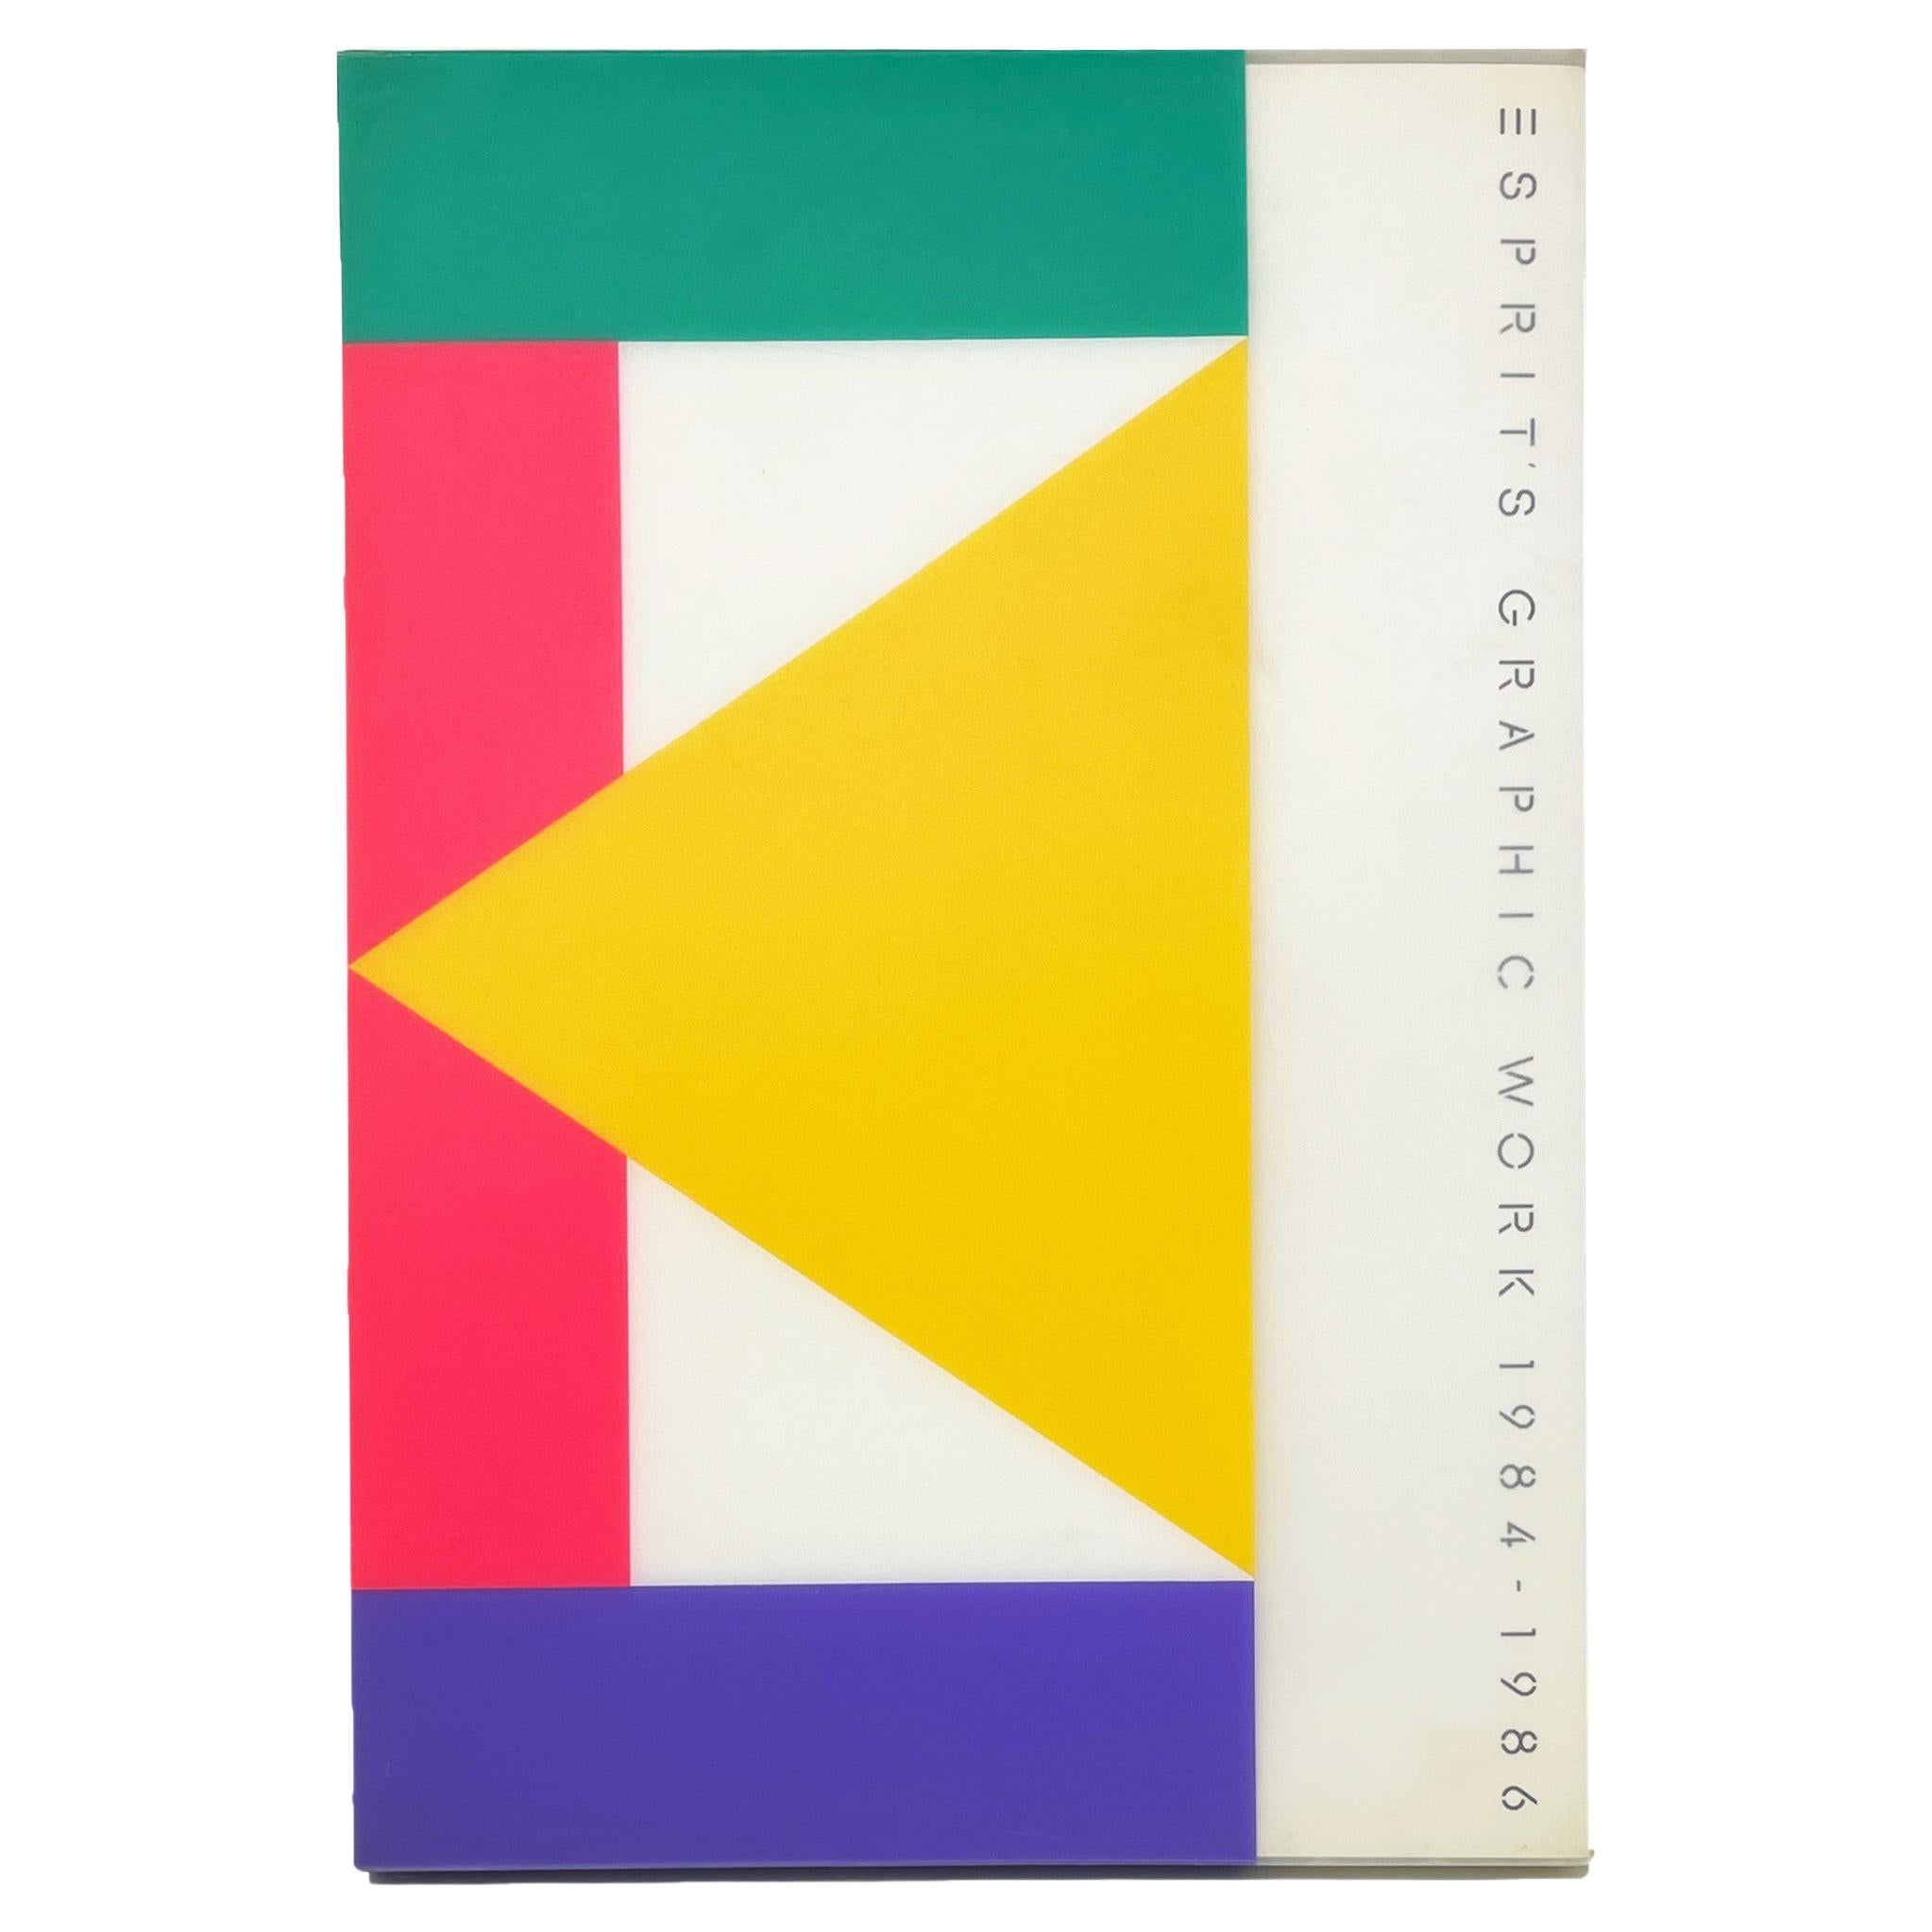 Esprit: Graphic Work 1984-1986 Book